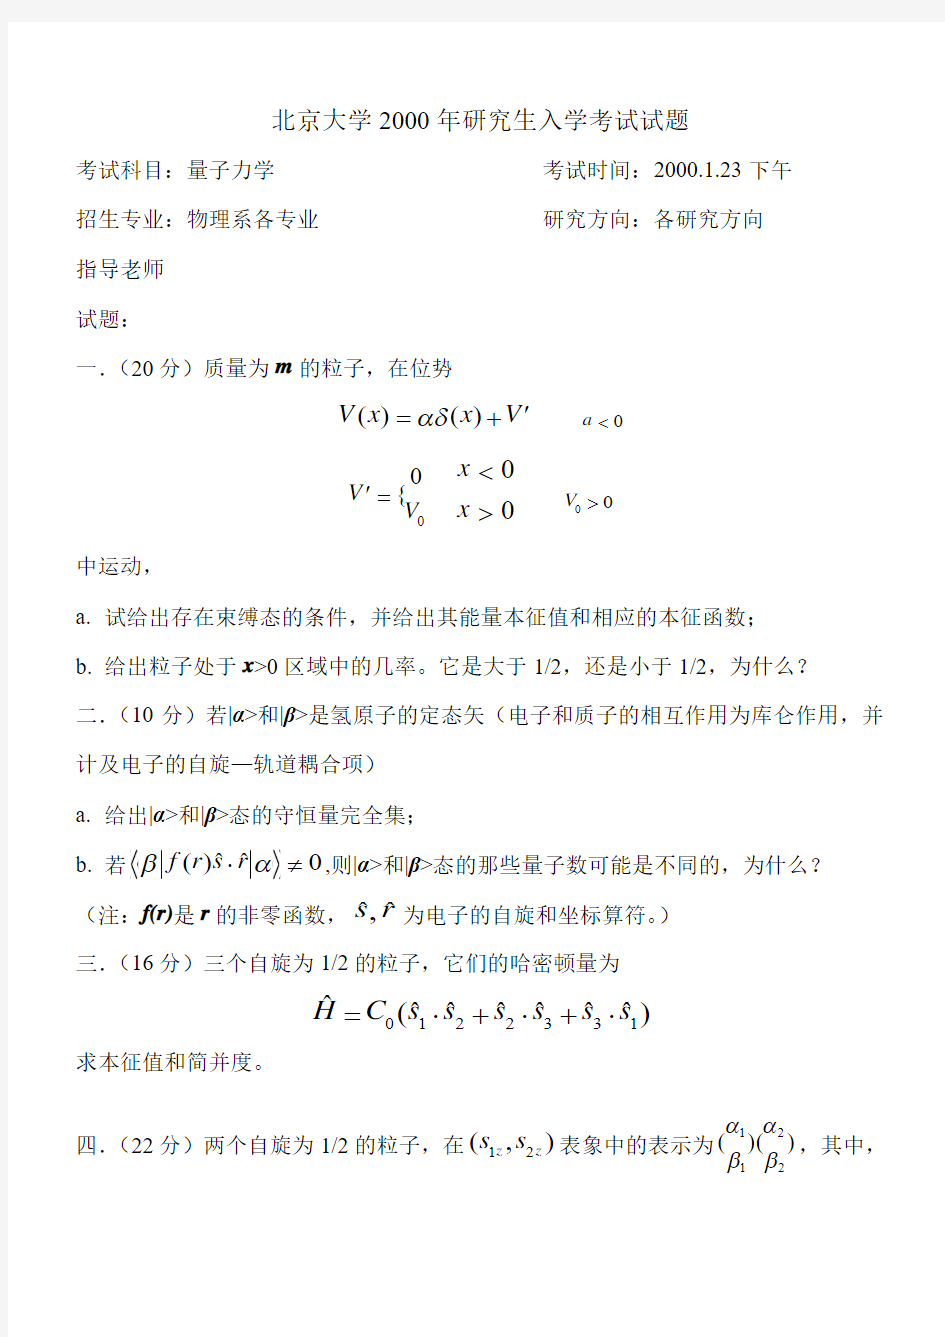 北京大学2000入学考试试题. 量子力学